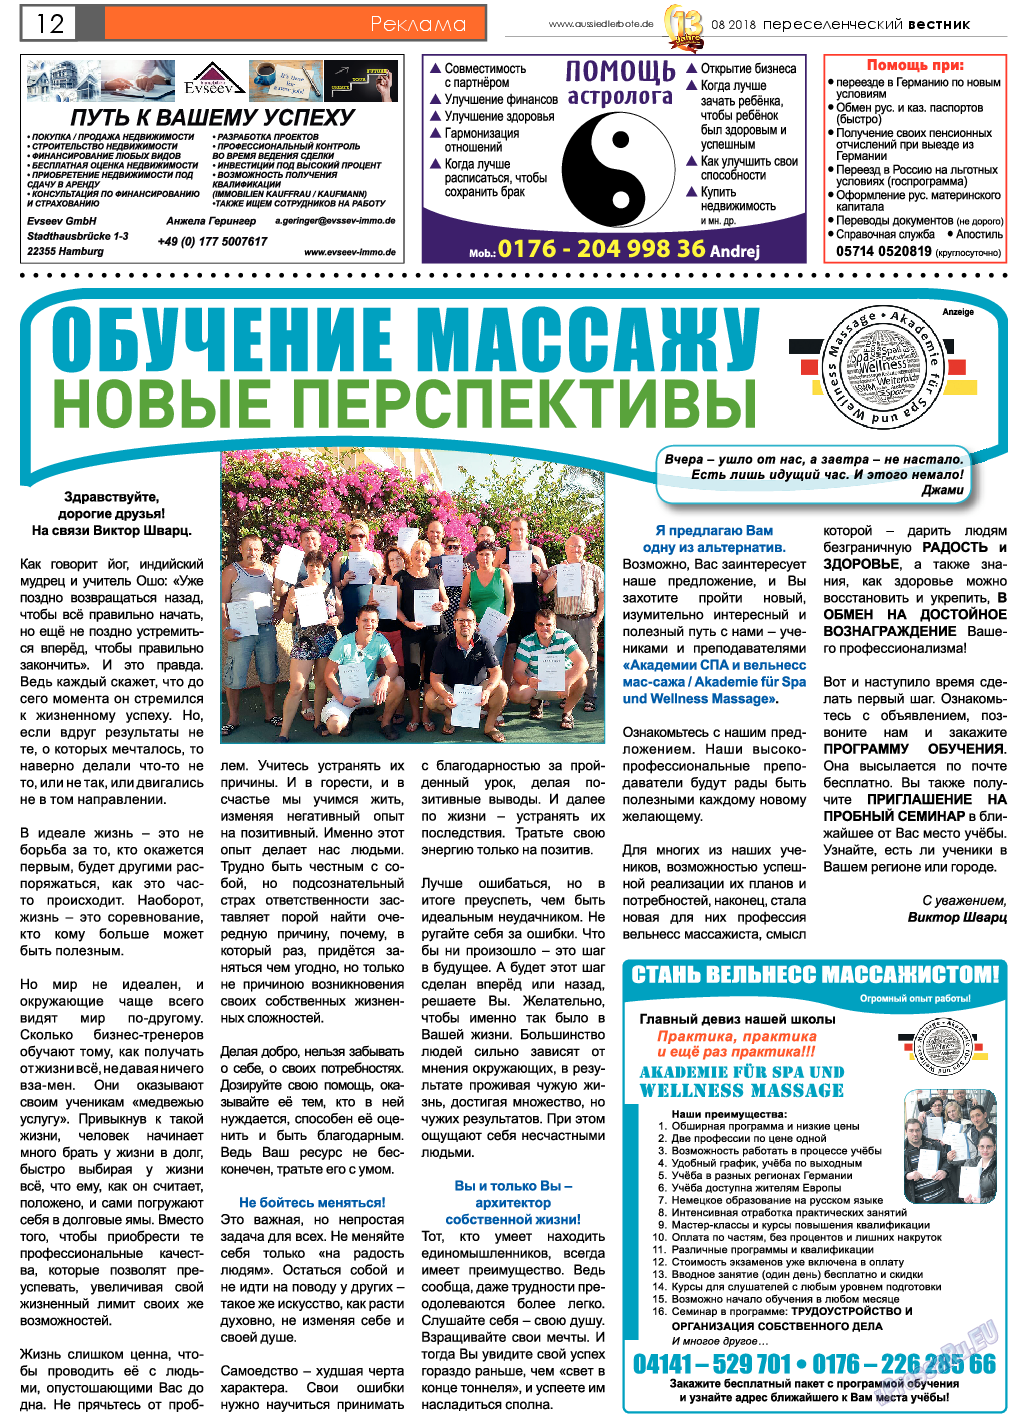 Переселенческий вестник, газета. 2018 №8 стр.12